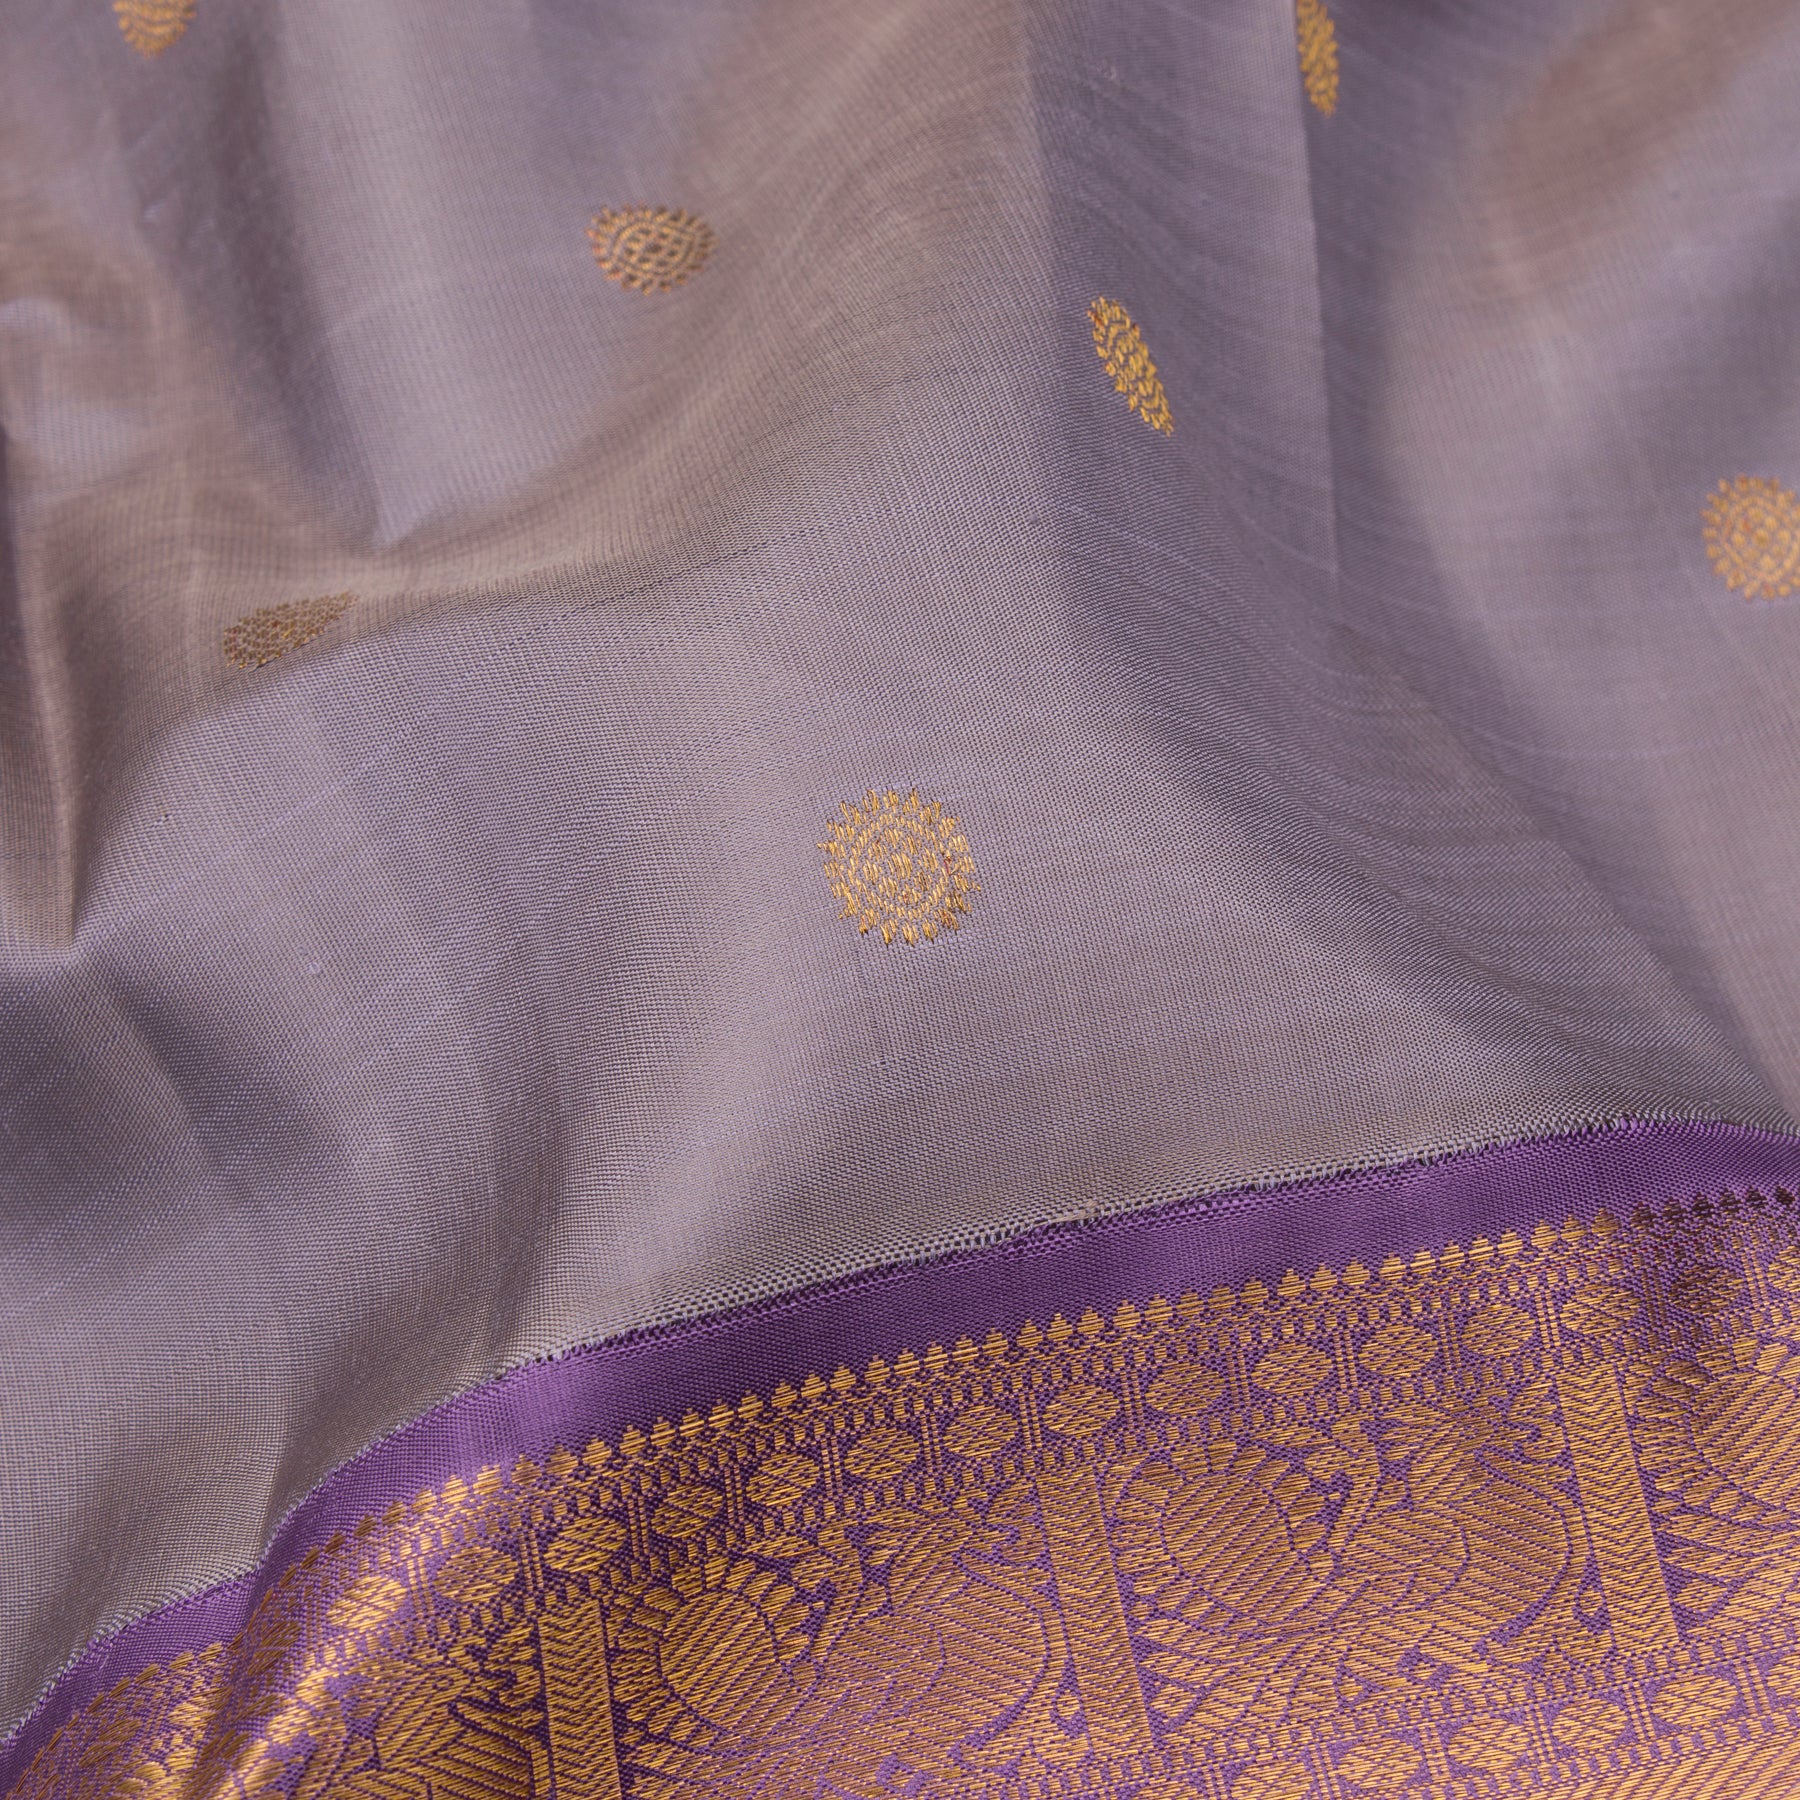 Kanakavalli Kanjivaram Silk Sari 23-110-HS001-08260 - Fabric View